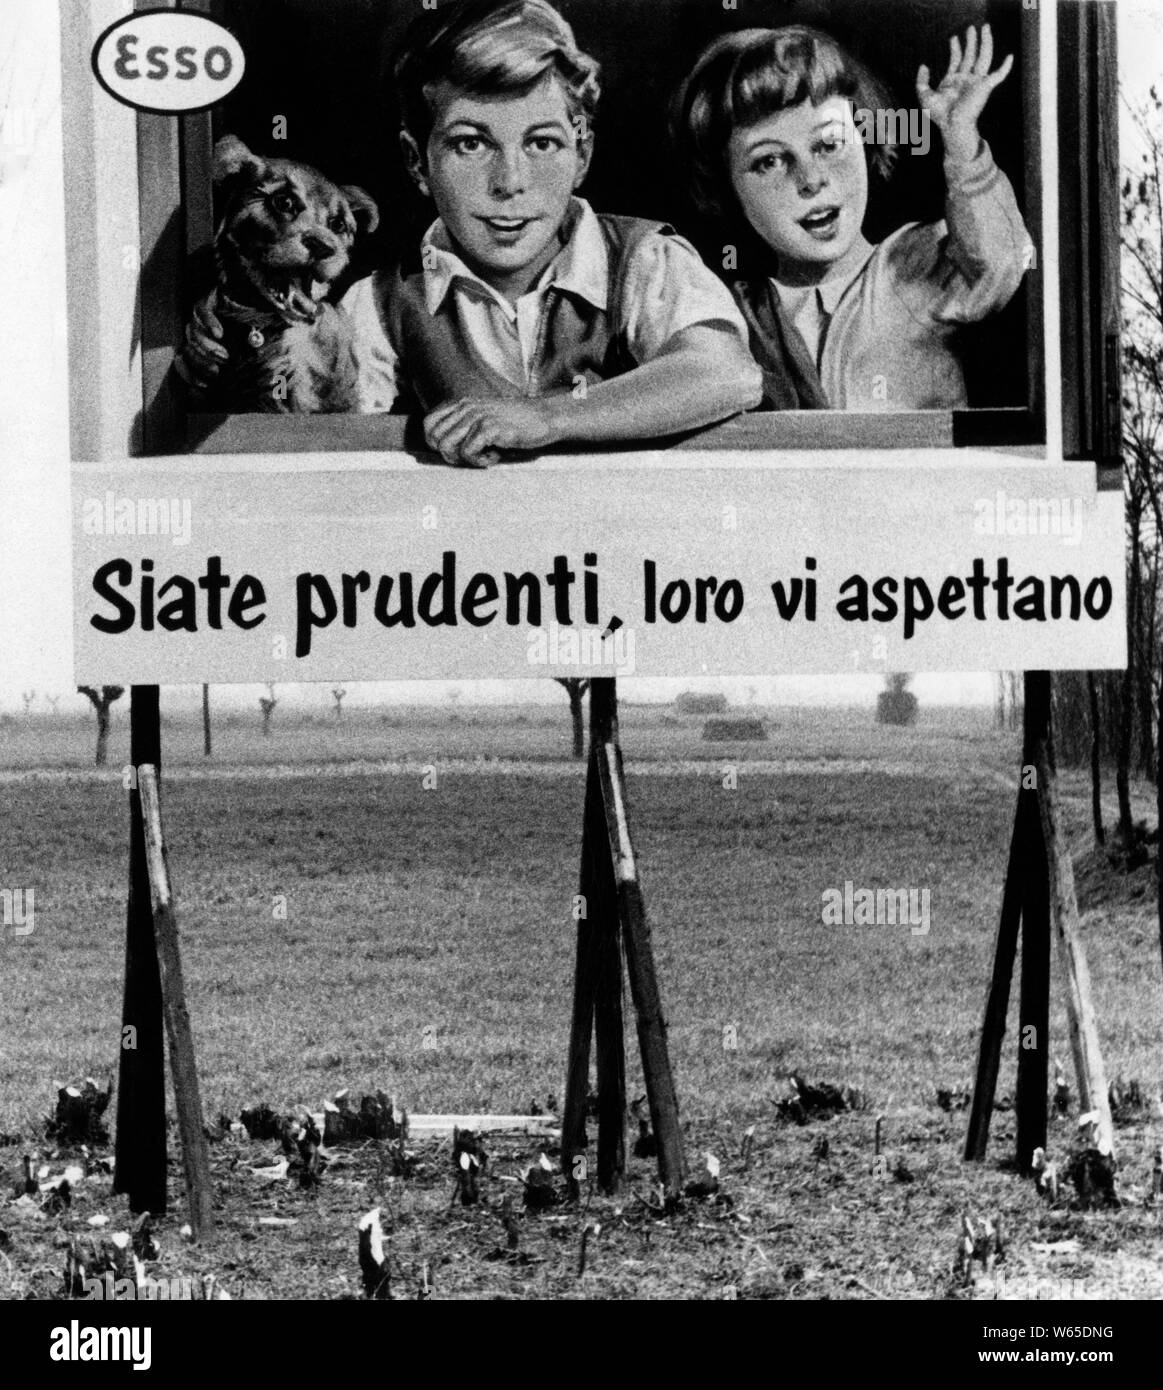 Esso Werbung mit Reklametafeln, Italien 1958 Stockfoto